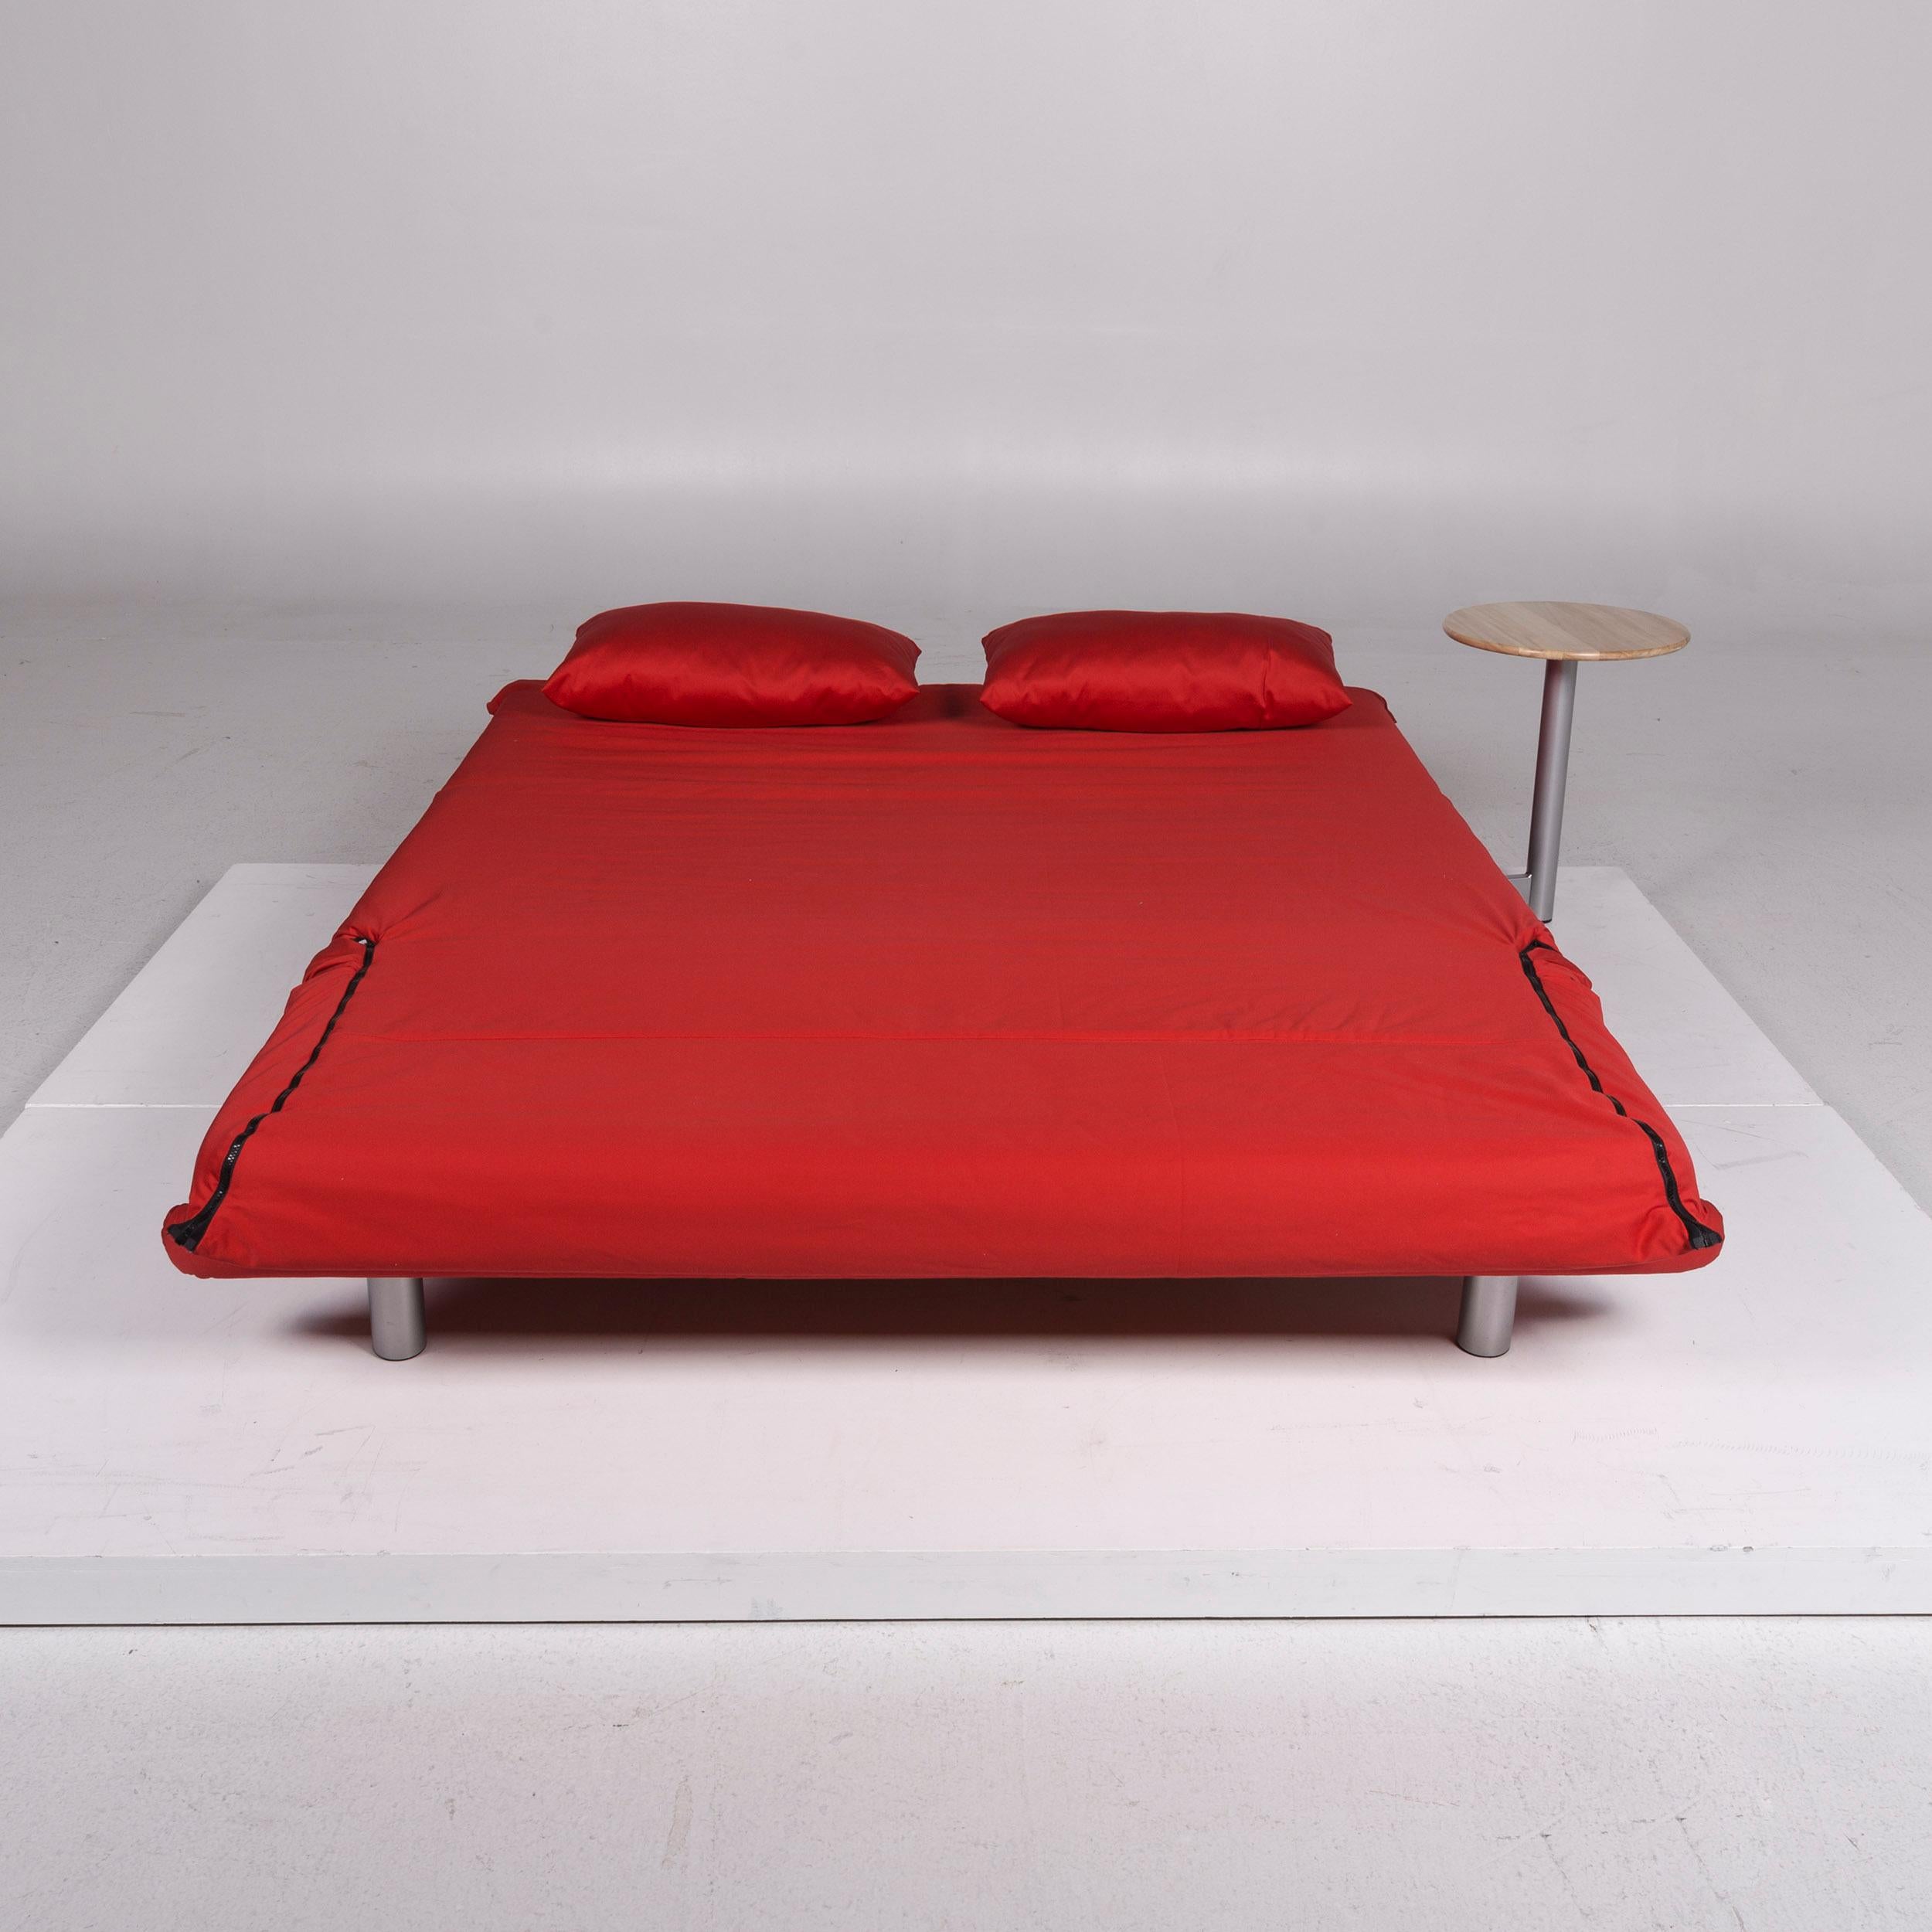 Wir präsentieren Ihnen ein Ligne Roset multy Stoffsofa rot Schlafsofa Funktion Couch.

 Produktabmessungen in Zentimetern:
 

 Tiefe 101
Breite 165
Höhe 81
Sitzhöhe 41
Sitztiefe 66
Sitzbreite 155
Rückenhöhe 40.


   